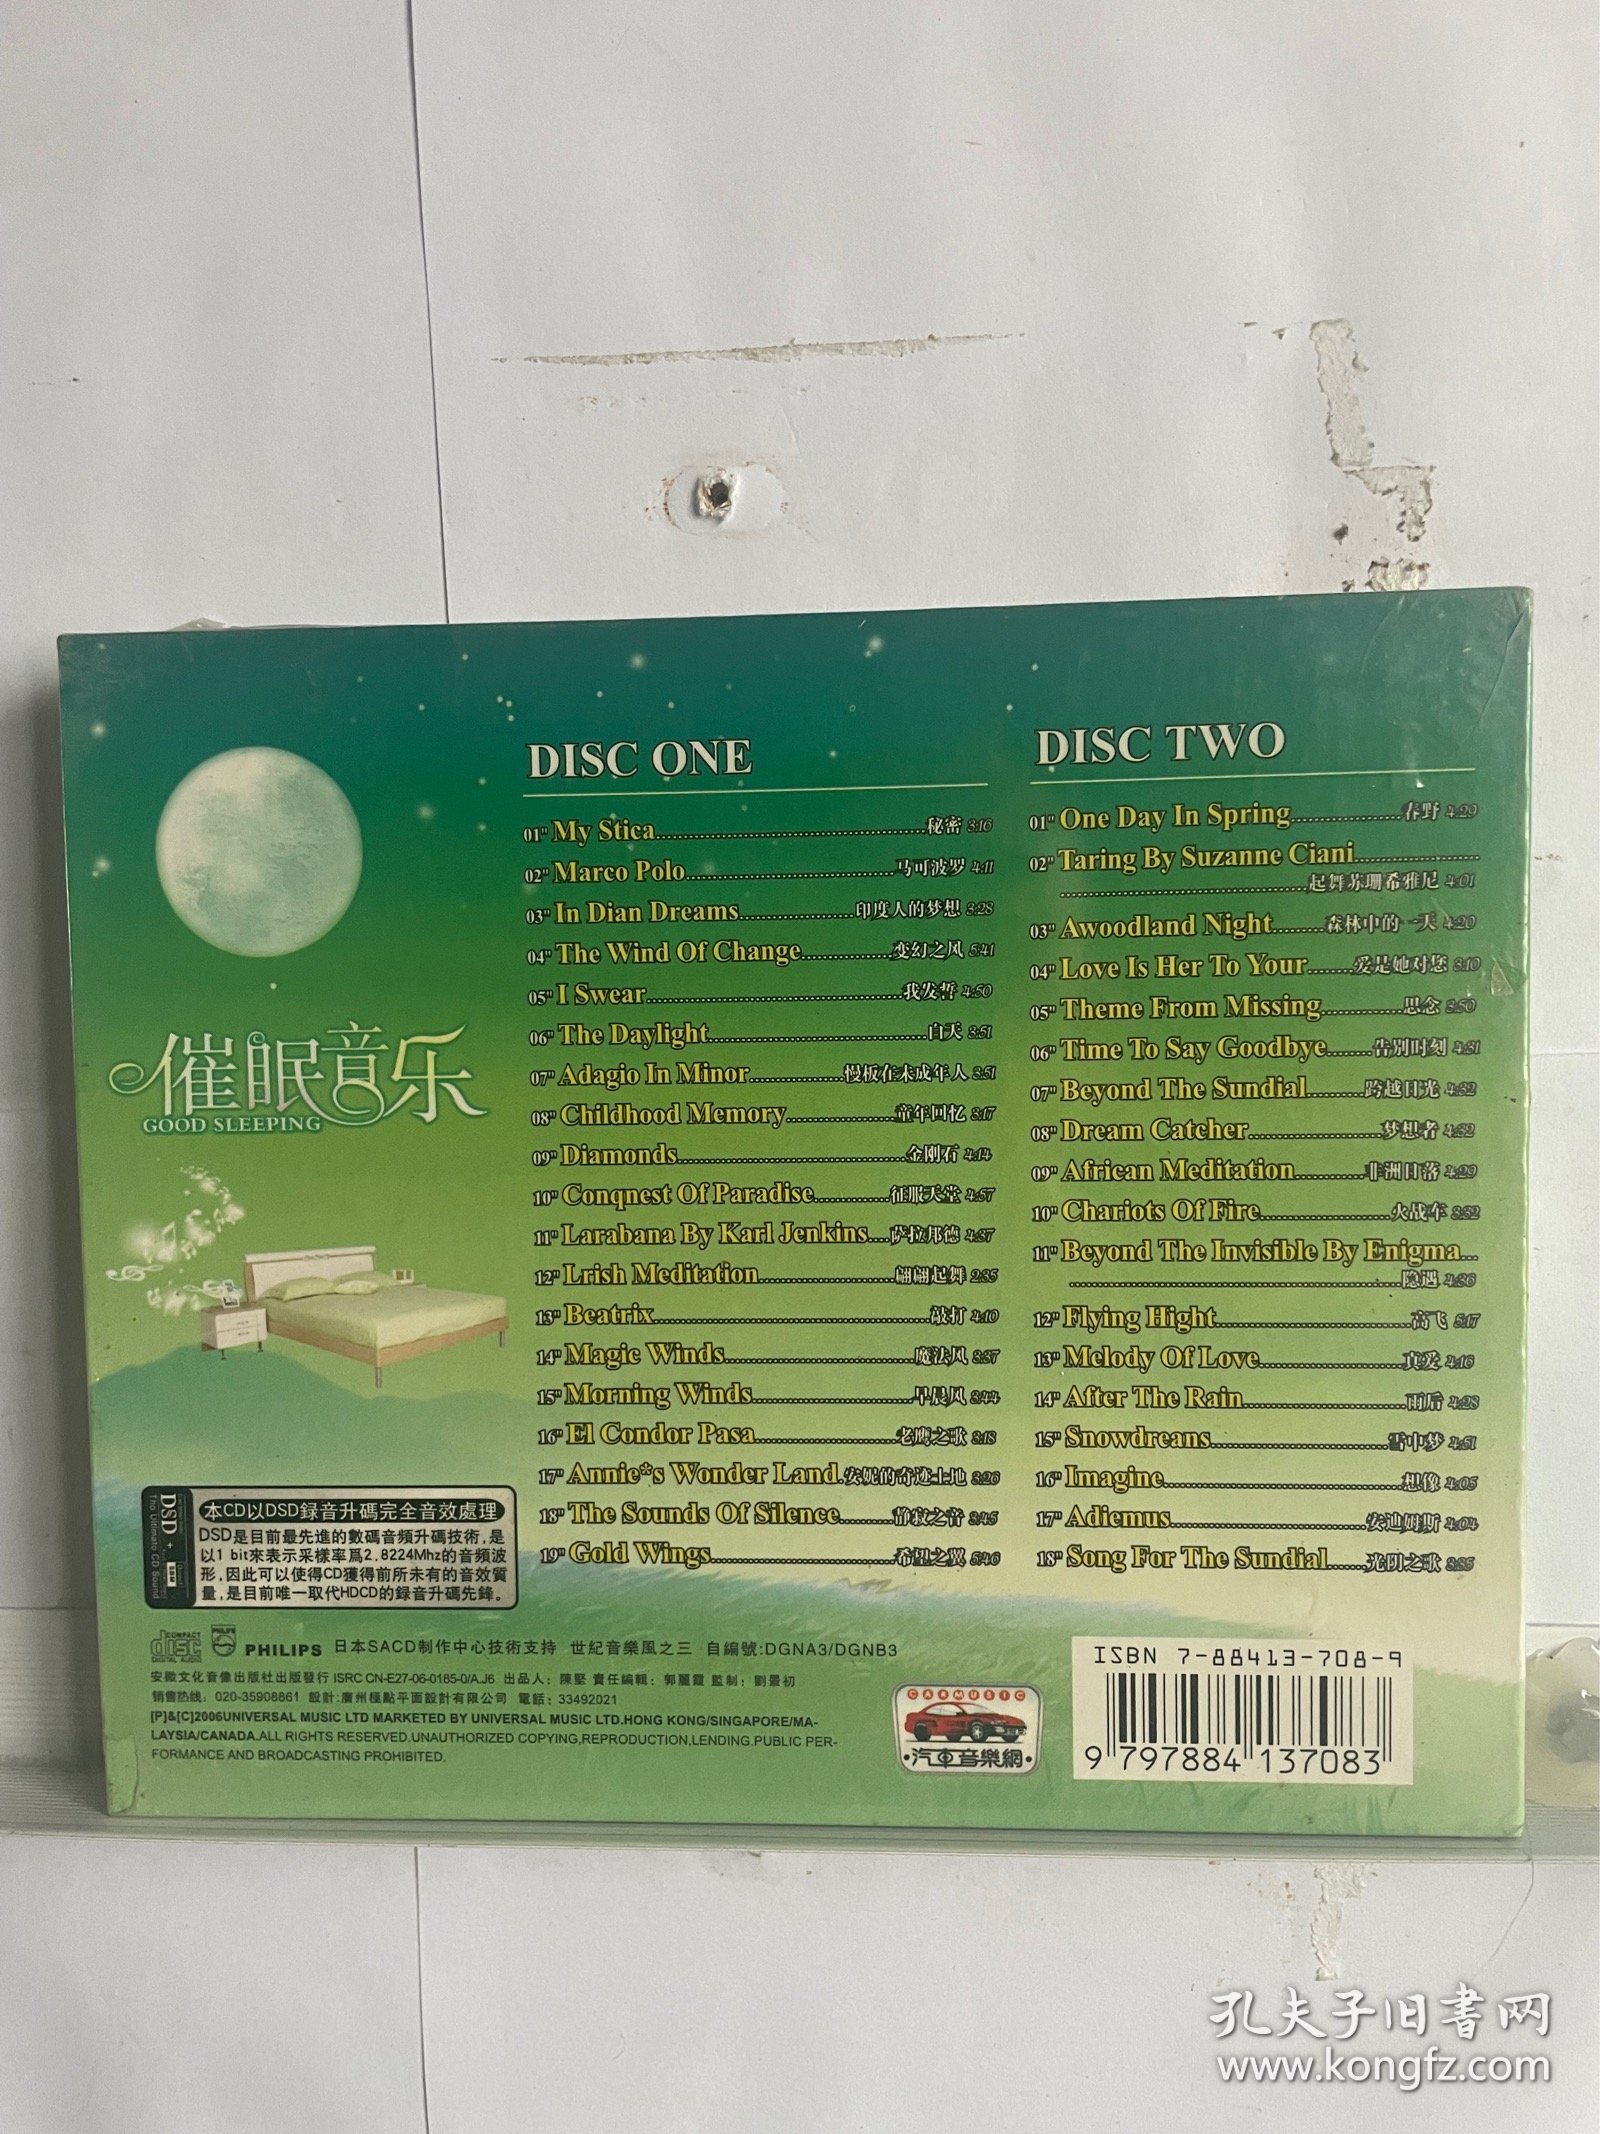 催眠曲CD歌曲，一盒2碟全新正品，还剩最后几个了，特价20，满50包邮。特殊商品